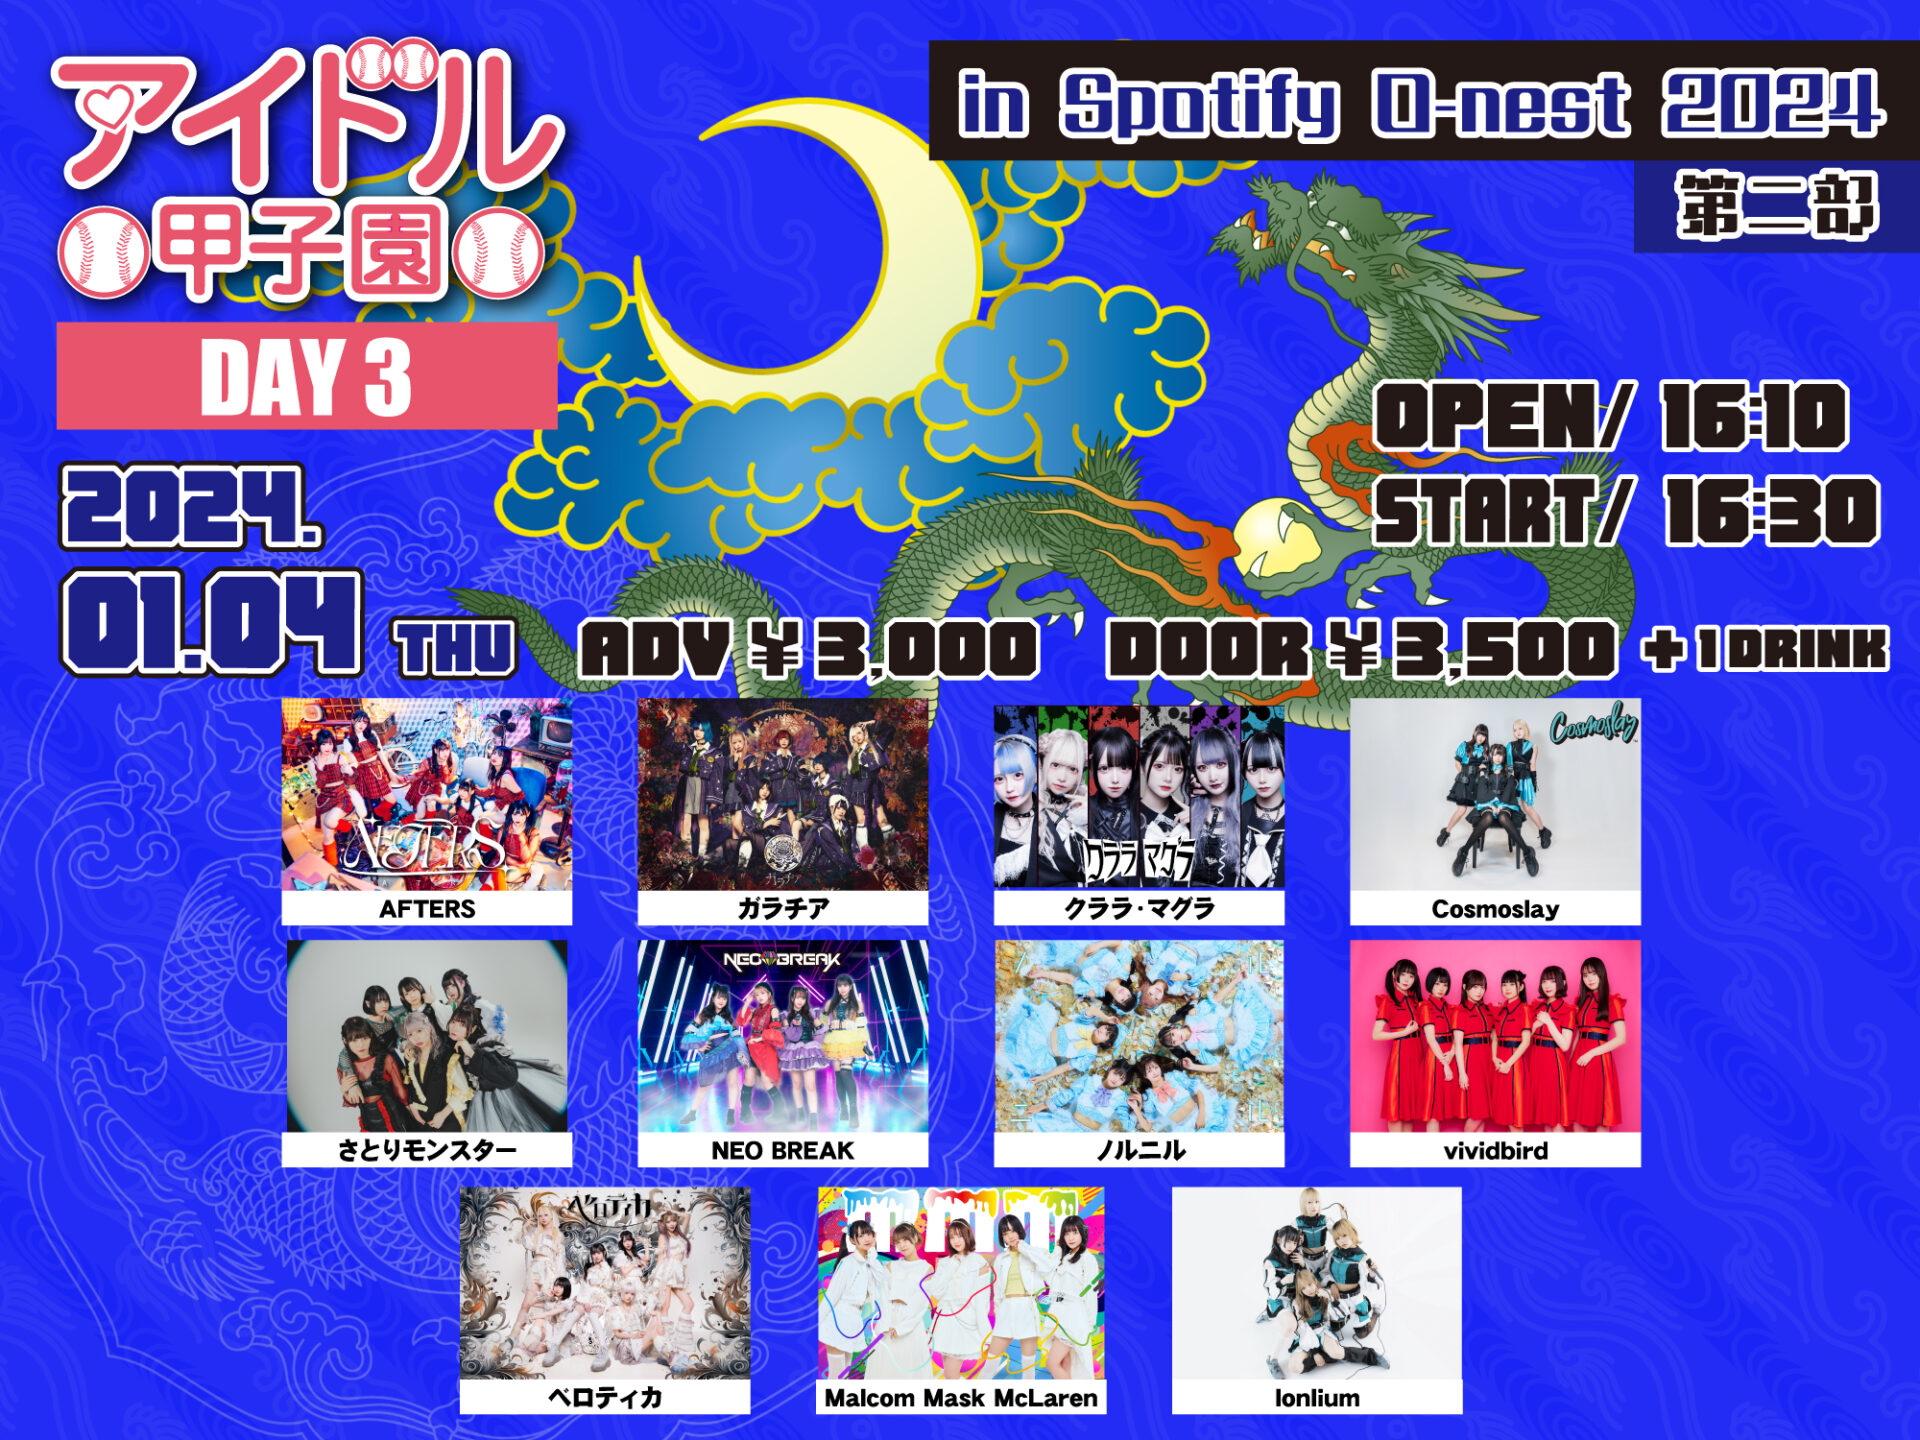 「アイドル甲子園 in Spotify O-nest 2024」DAY3 第二部